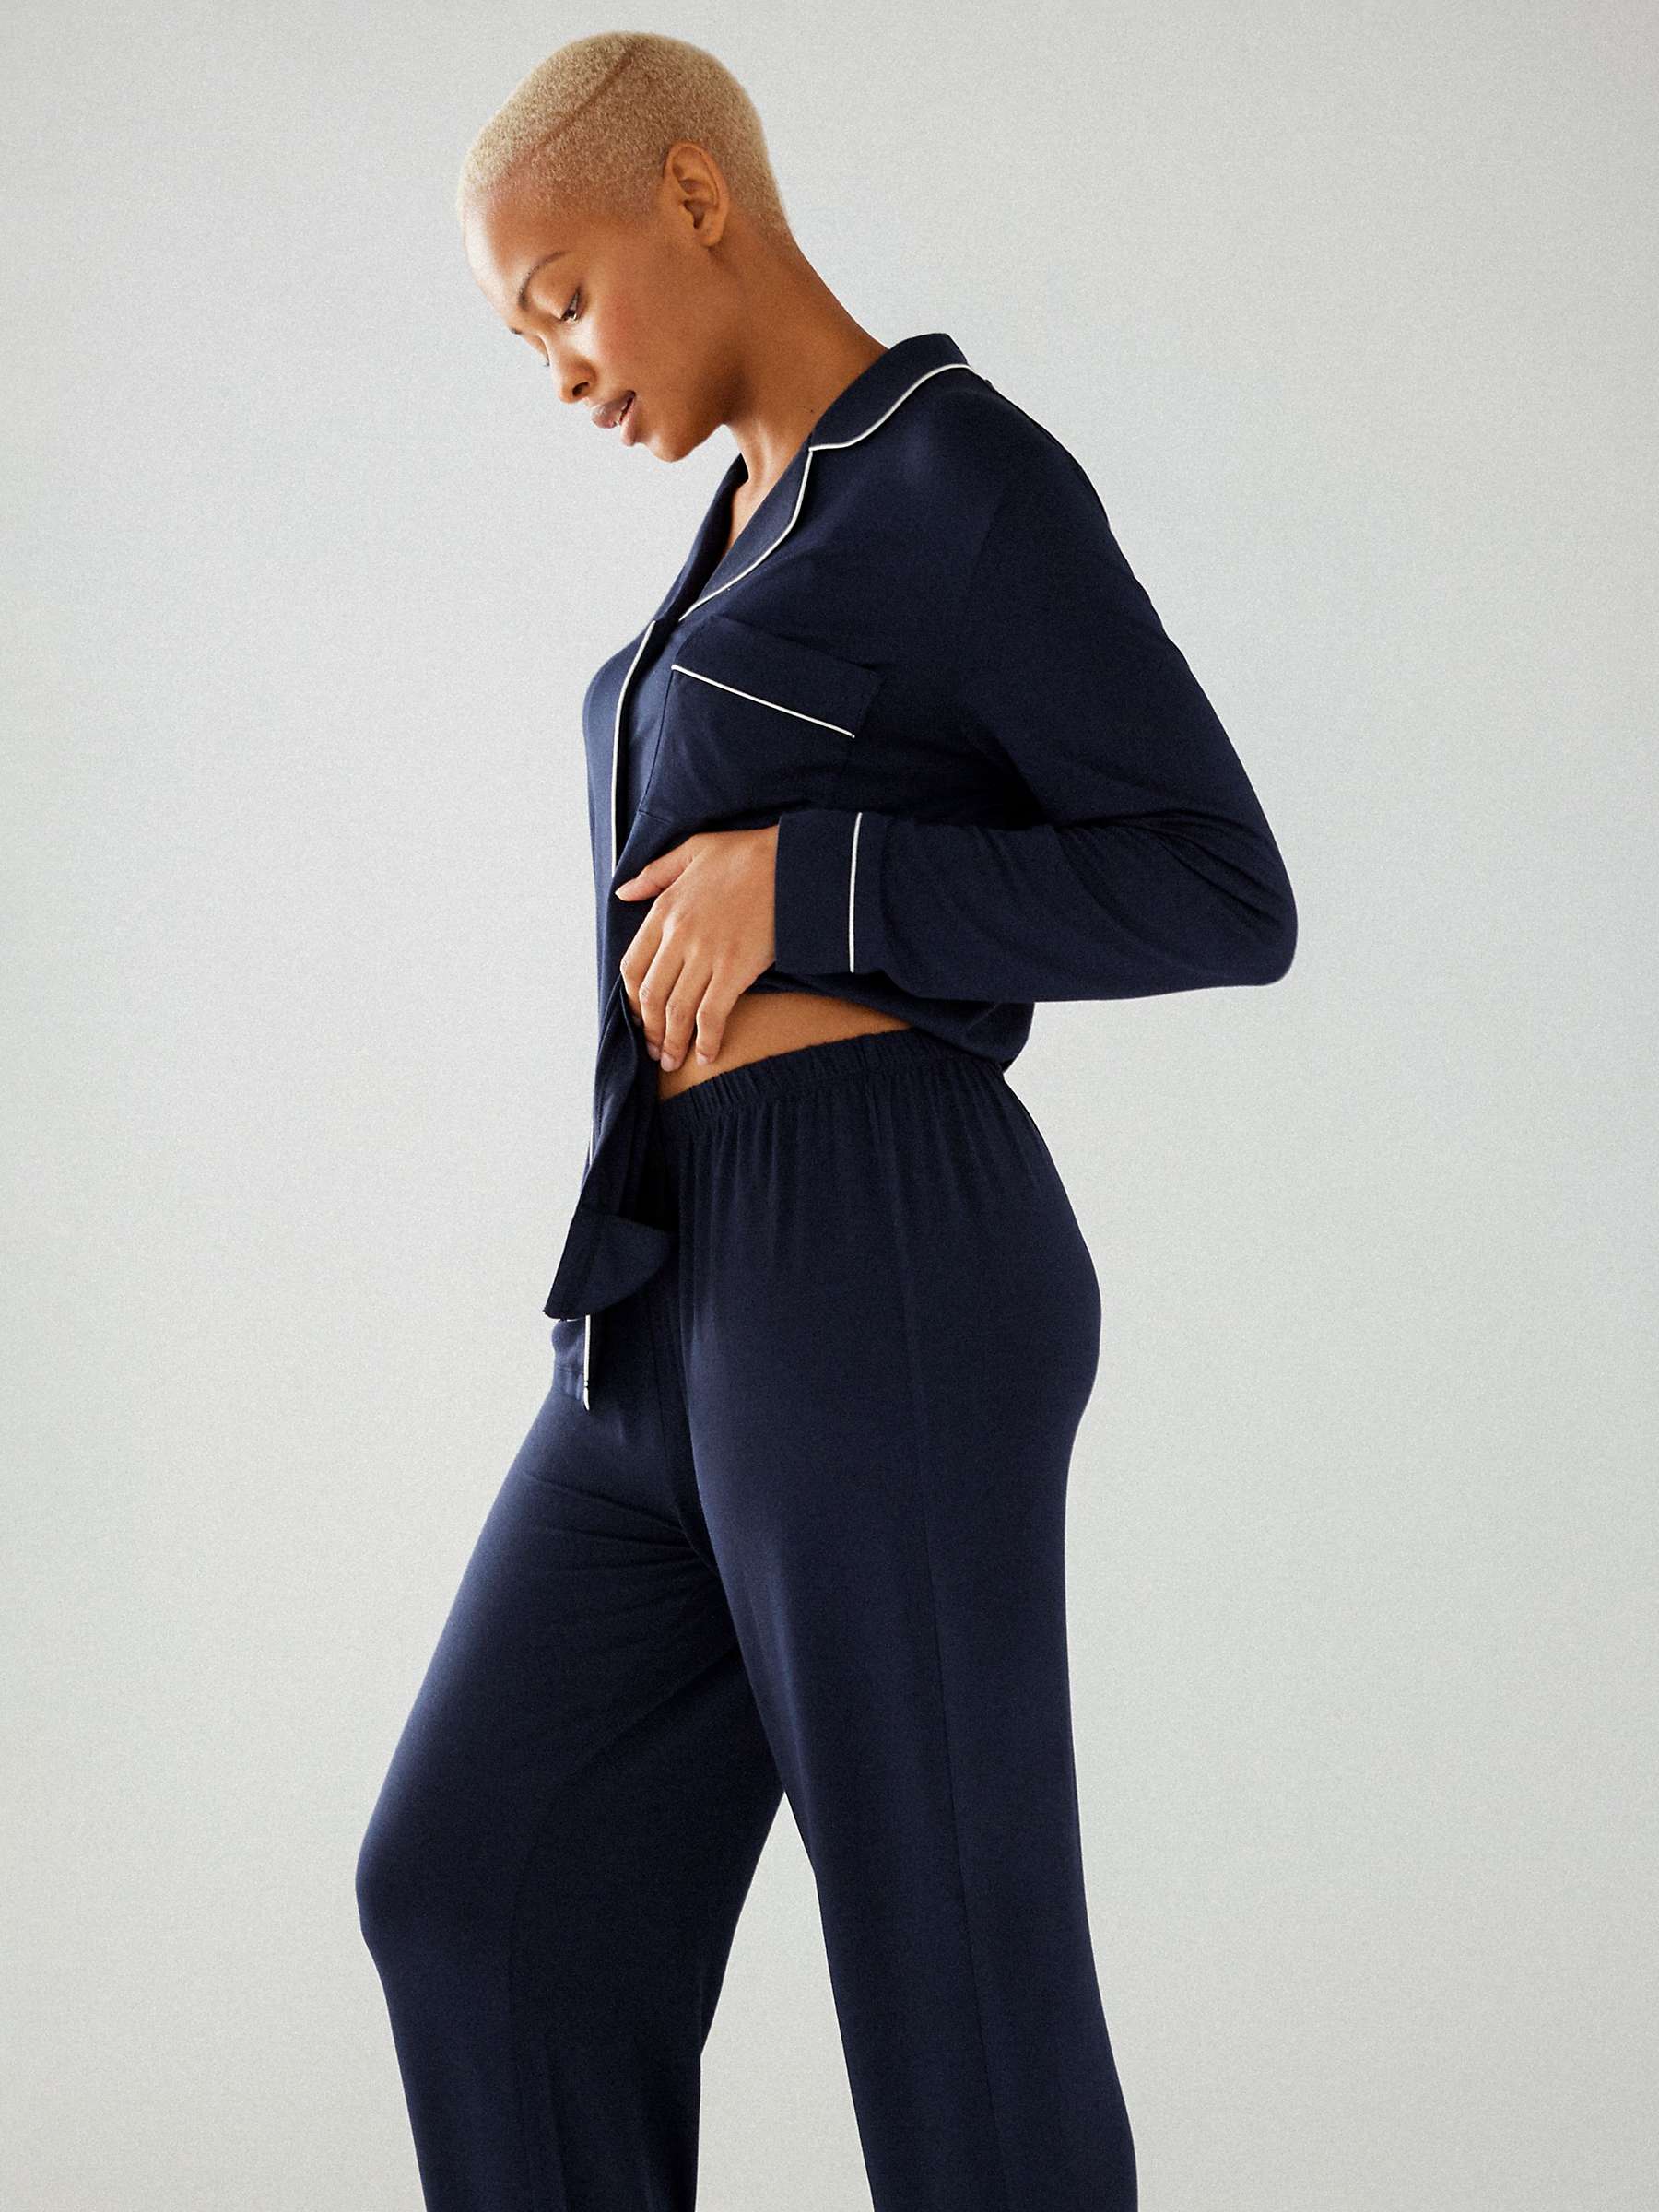 Buy Chelsea Peers Modal Long Shirt Pyjama Set, Navy Online at johnlewis.com